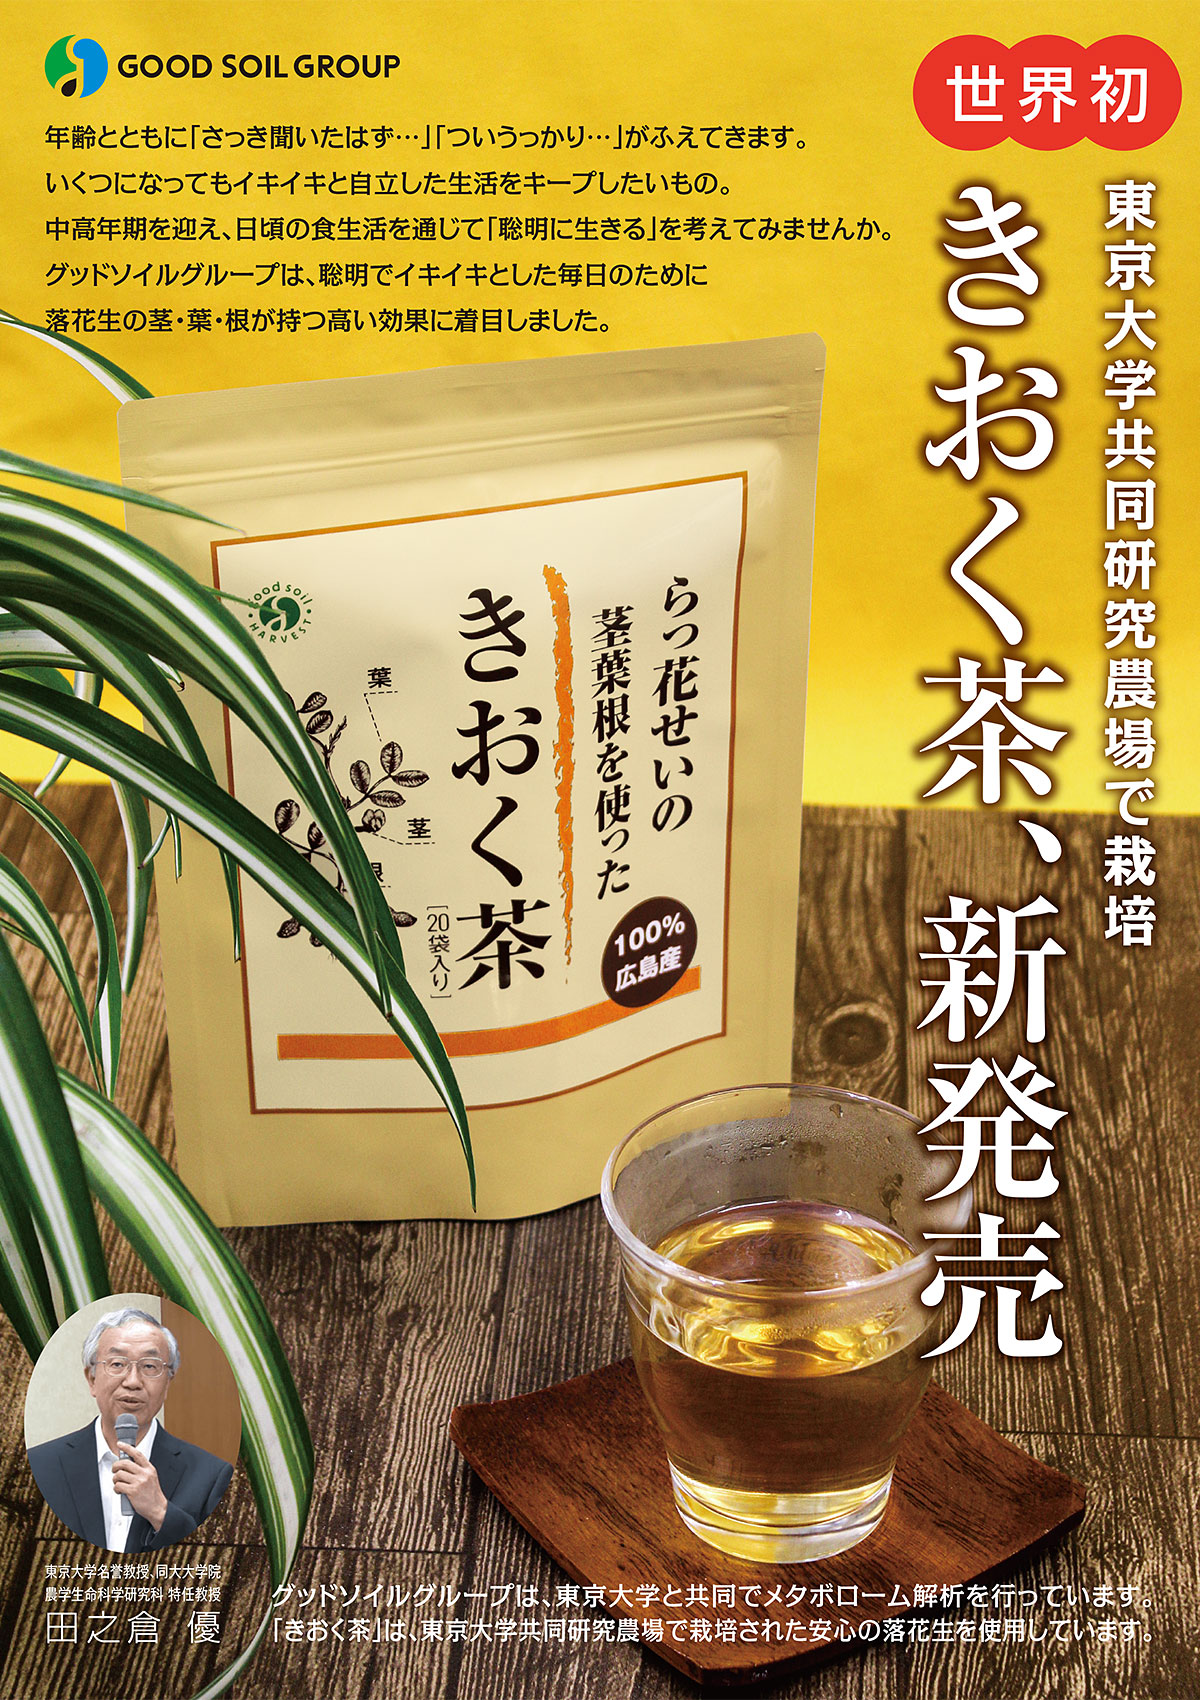 世界初 きおく茶 新発売 - グッドソイルグループは、東京大学と共同でメタボローム解析を行っています。